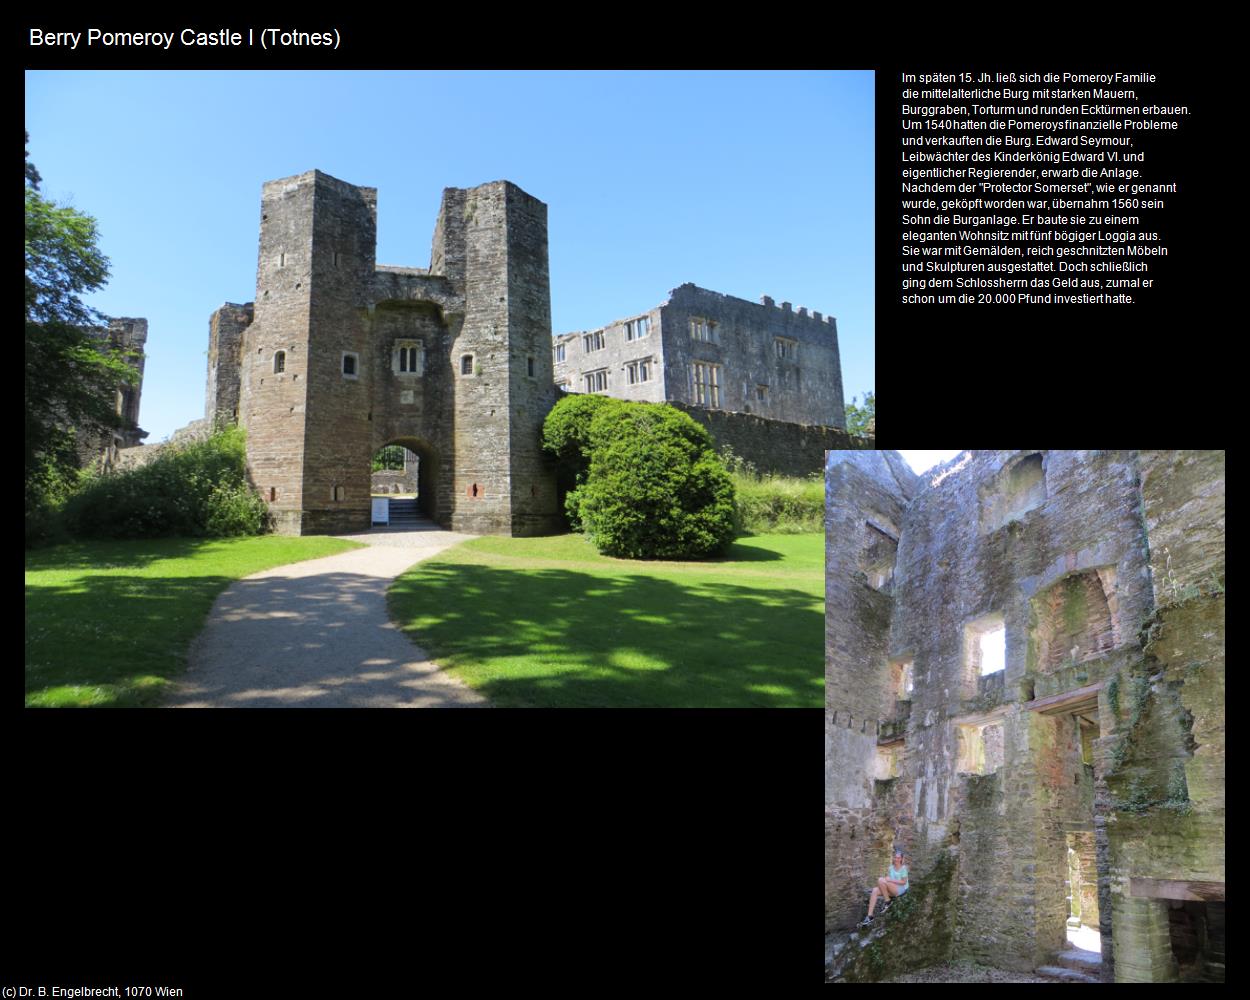 Berry Pomeroy Castle I (Totnes, England) in Kulturatlas-ENGLAND und WALES